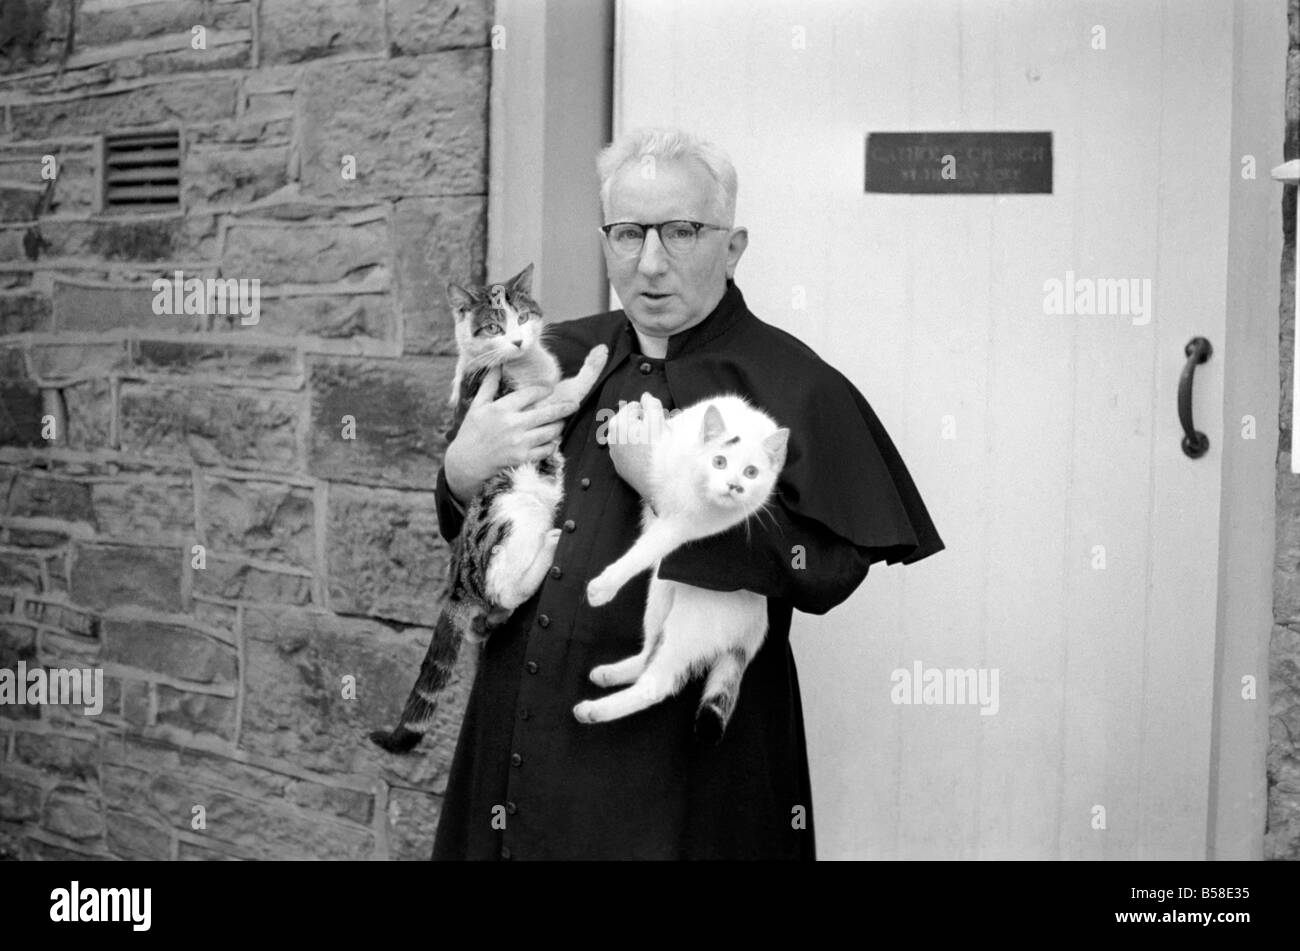 Le curé vu ici rassemblant ses petits chats.. Février 1970 70-1627-002 Banque D'Images